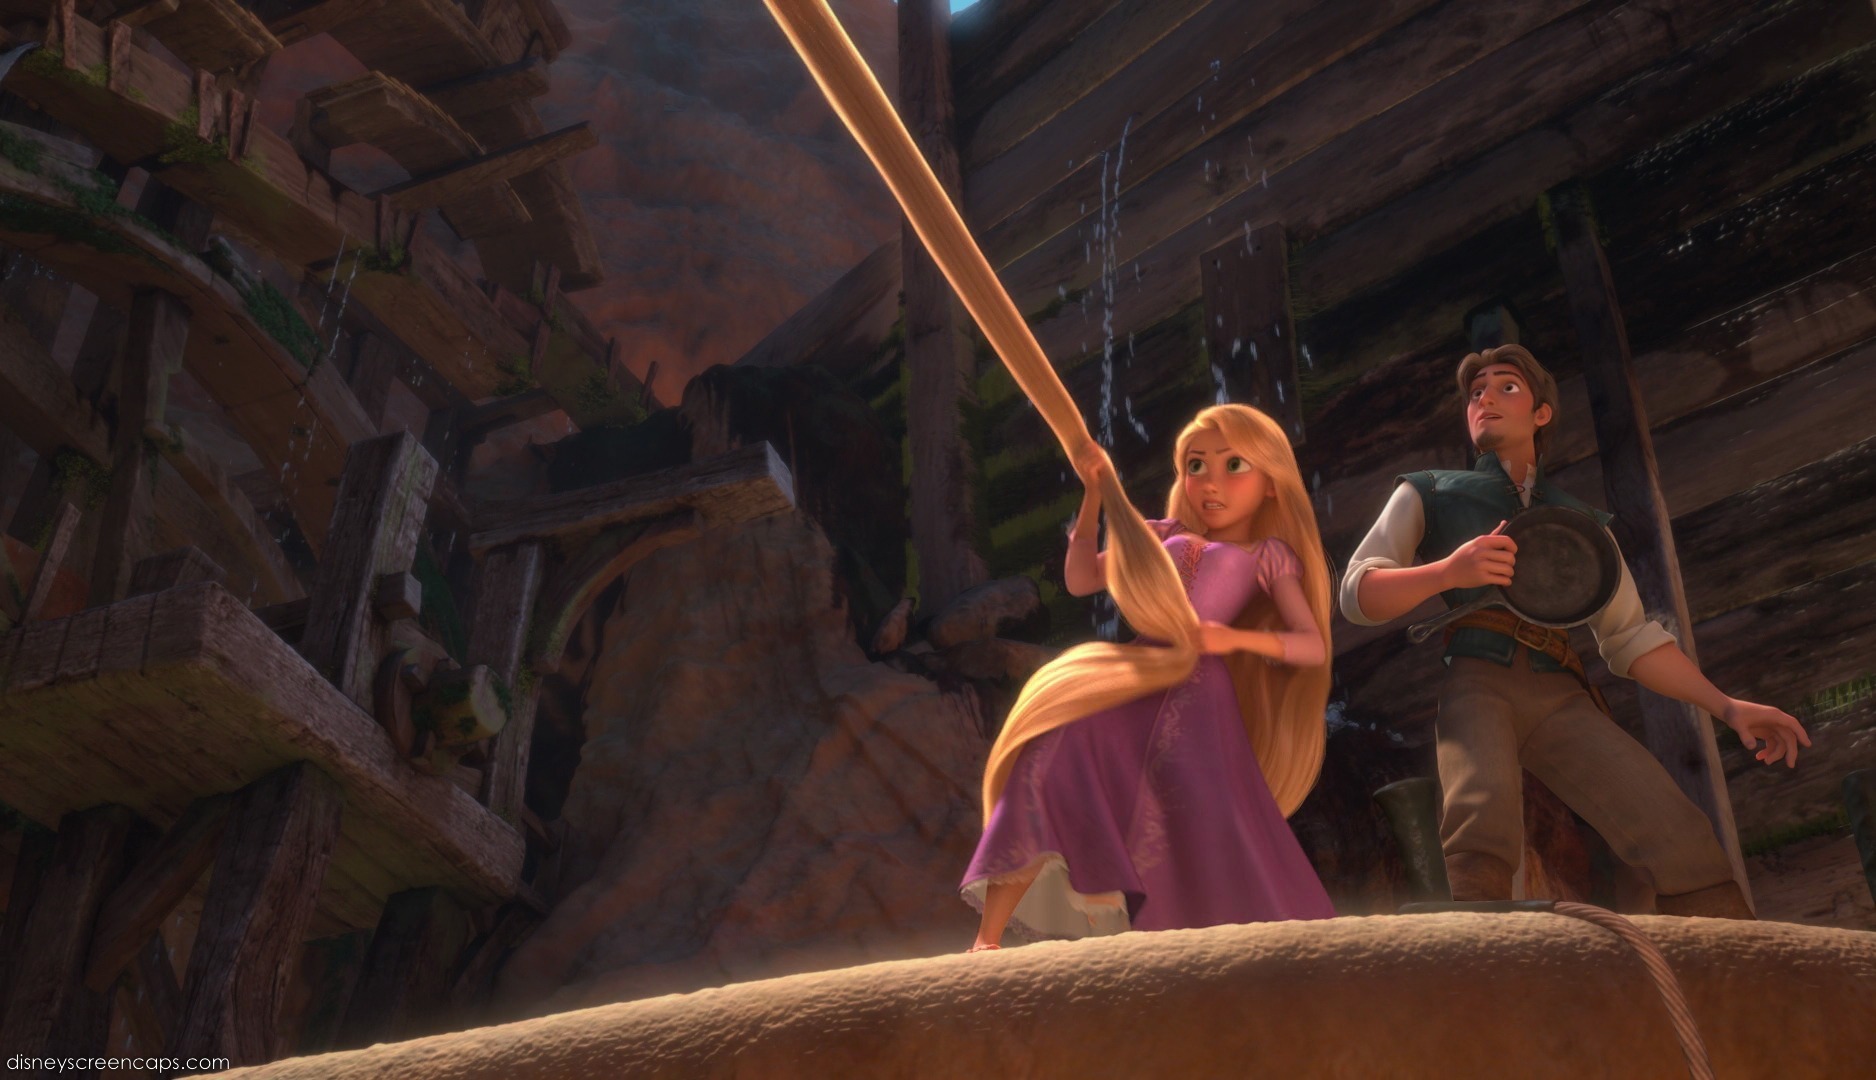 Rapunzel in action